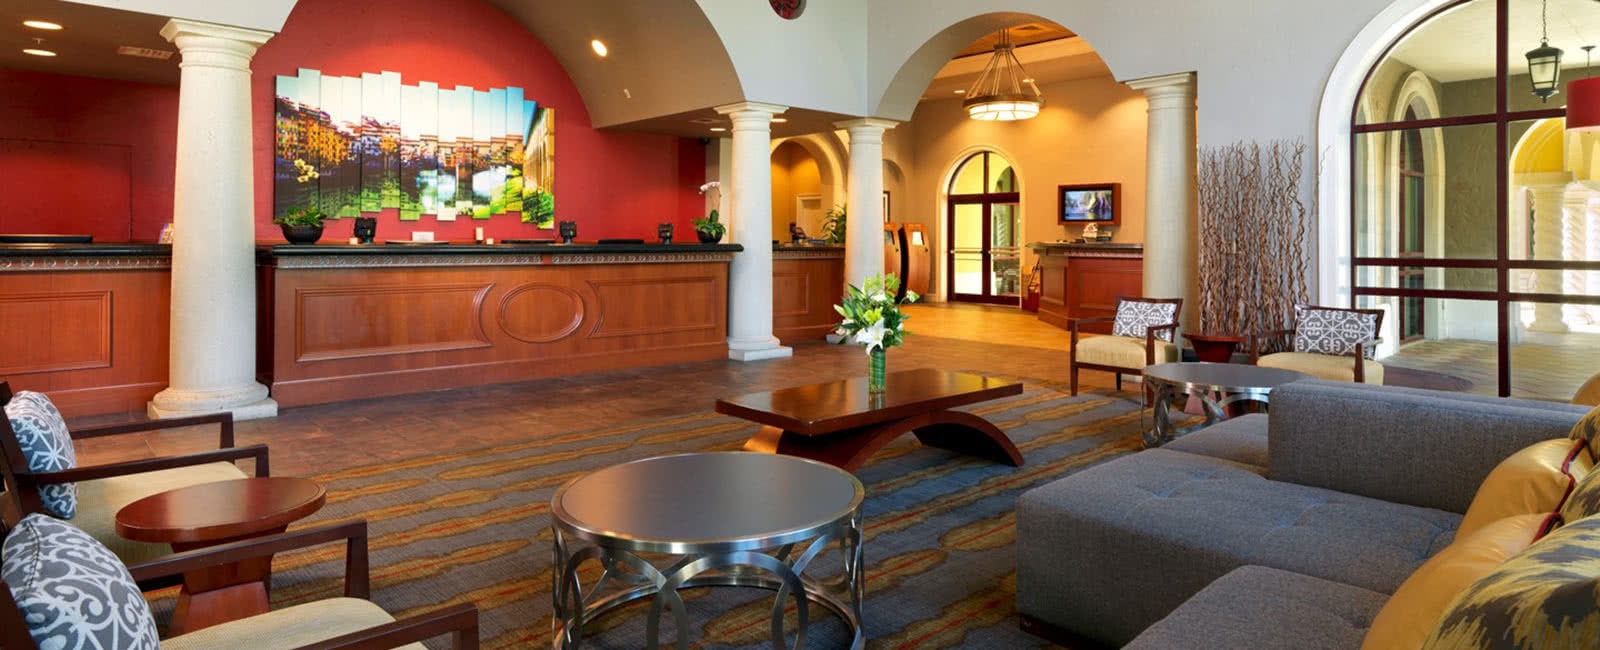 Lobby at Hilton Grand Vacations Club at Tuscany Village in Orlando, Florida